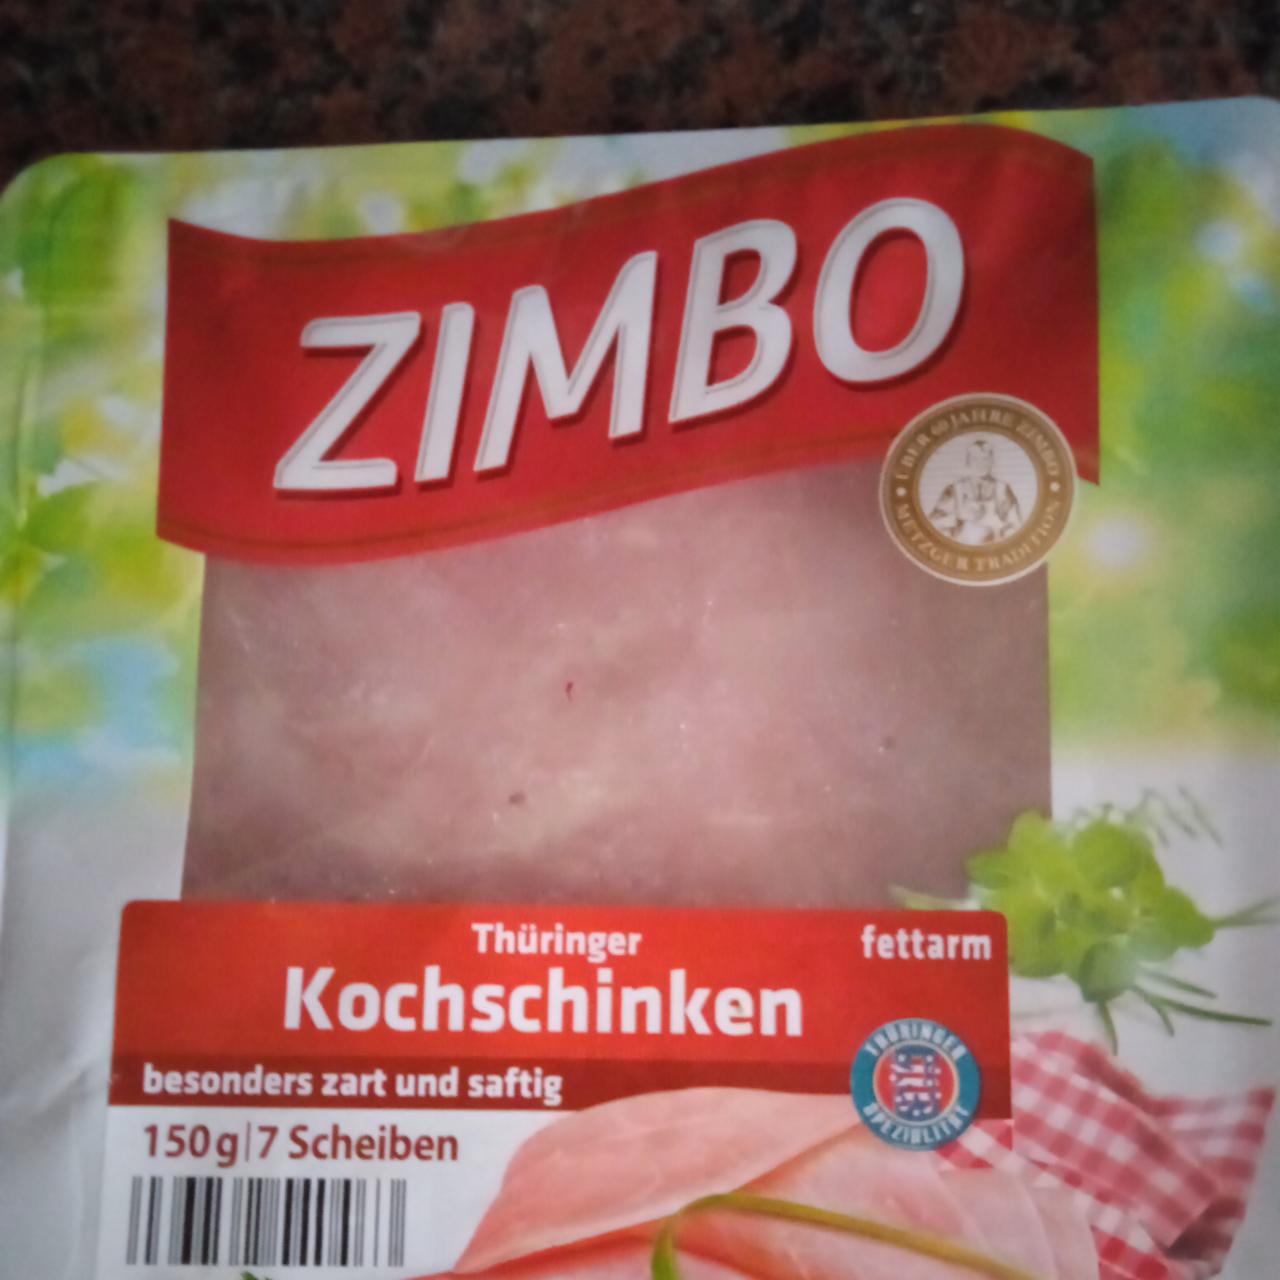 Fotografie - Thüringer Kochschinken Zimbo